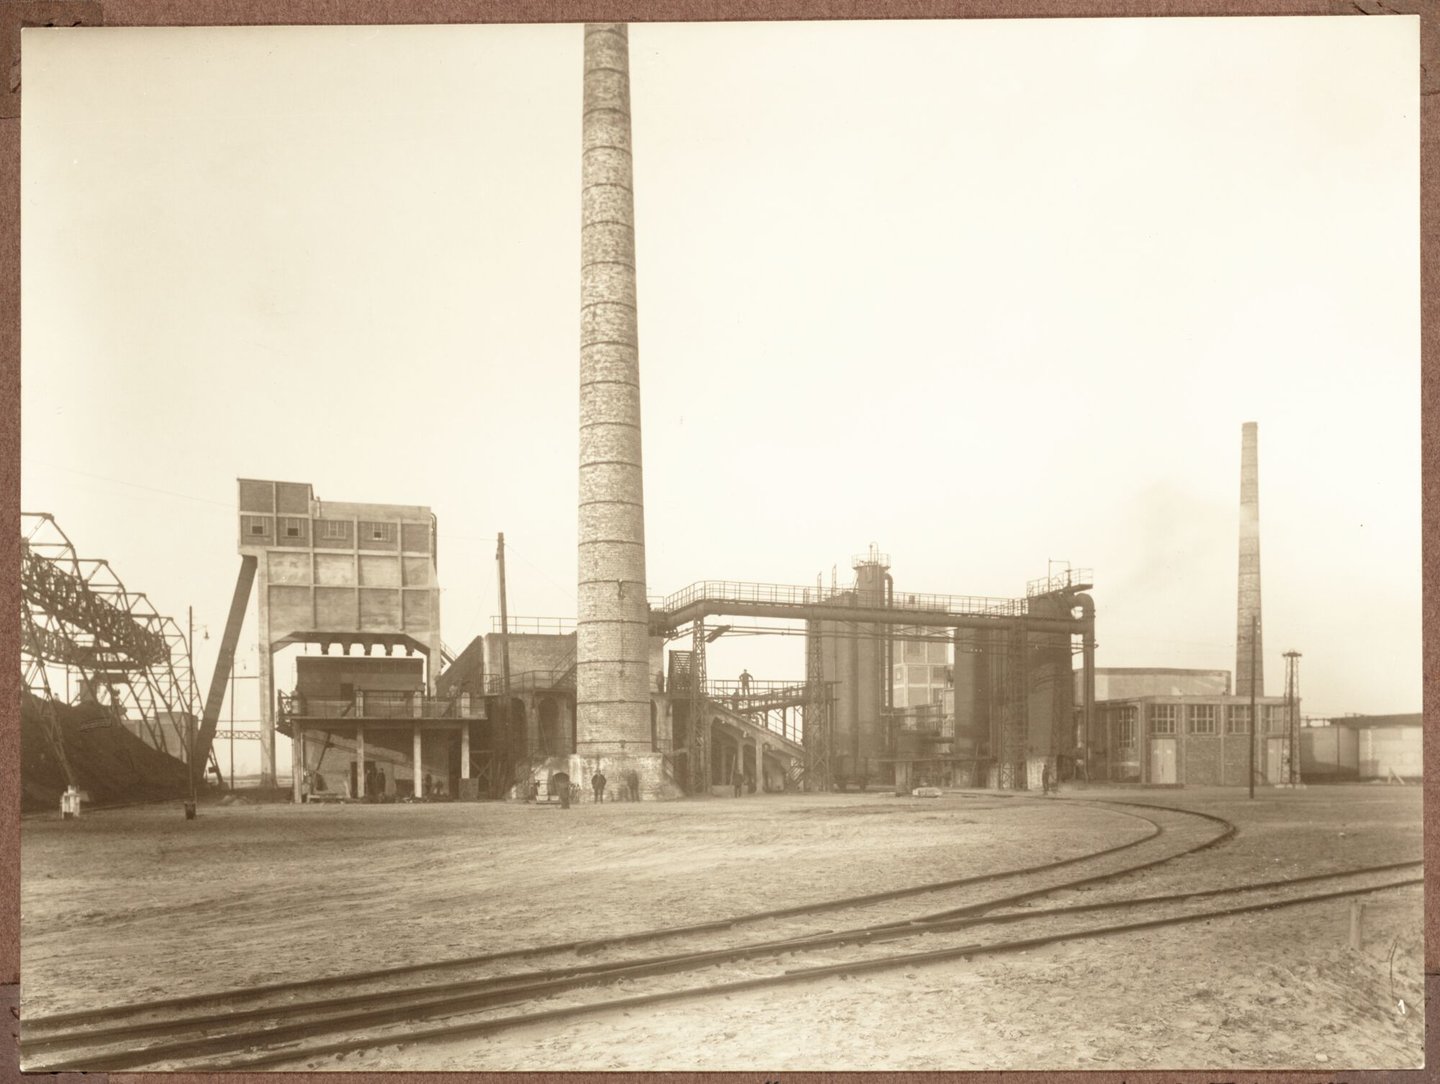 Cokesfabriek Kuhlmann in Zelzate